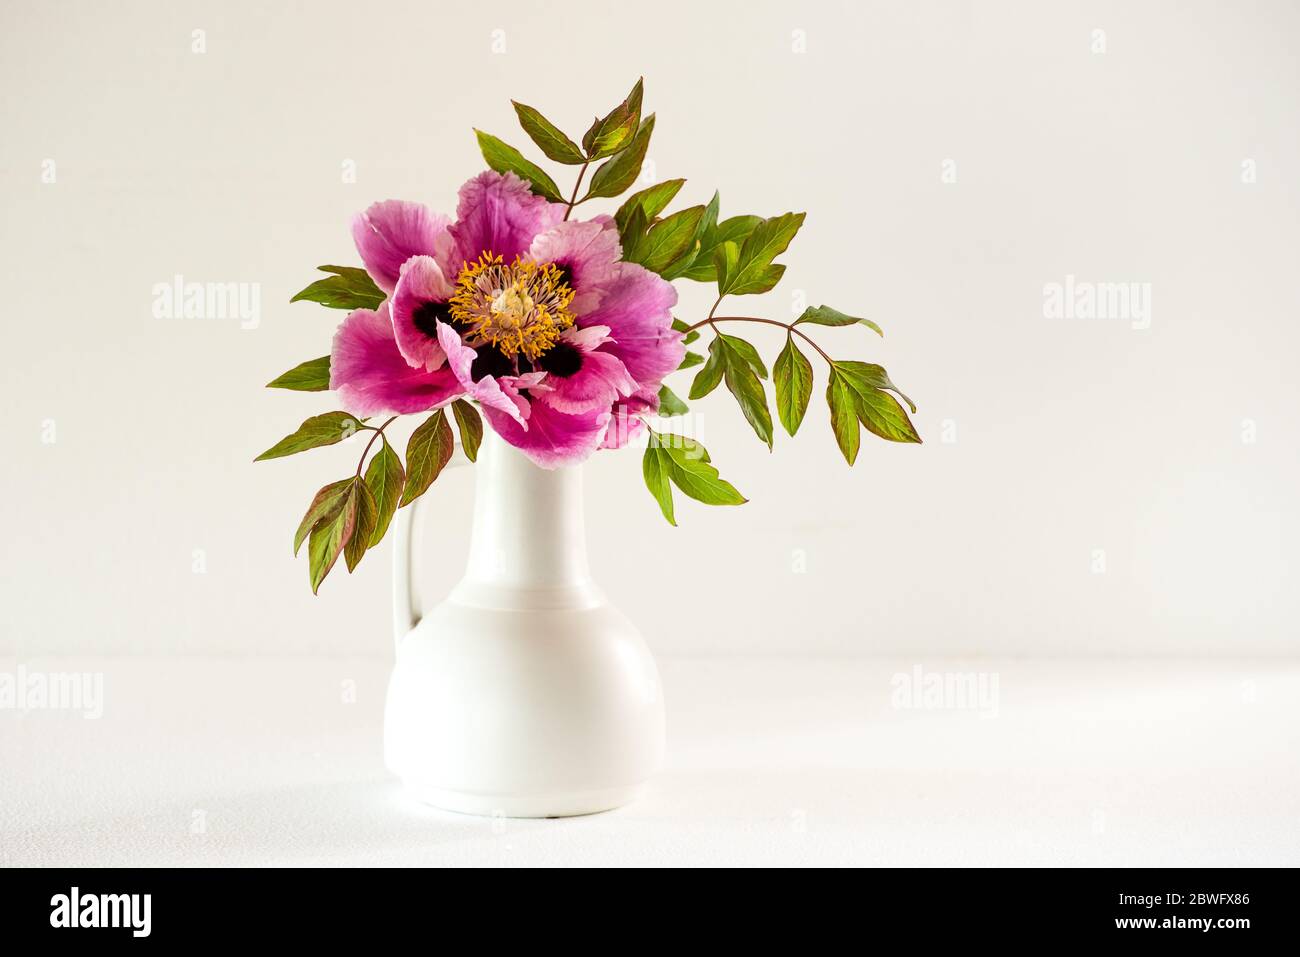 La bella e sontuosa pietra arborea fiorita piena soffiata (Paeonia rockii o Paeonia suffruticosa rockii) in un vaso bianco su sfondo bianco. Un Flo Foto Stock